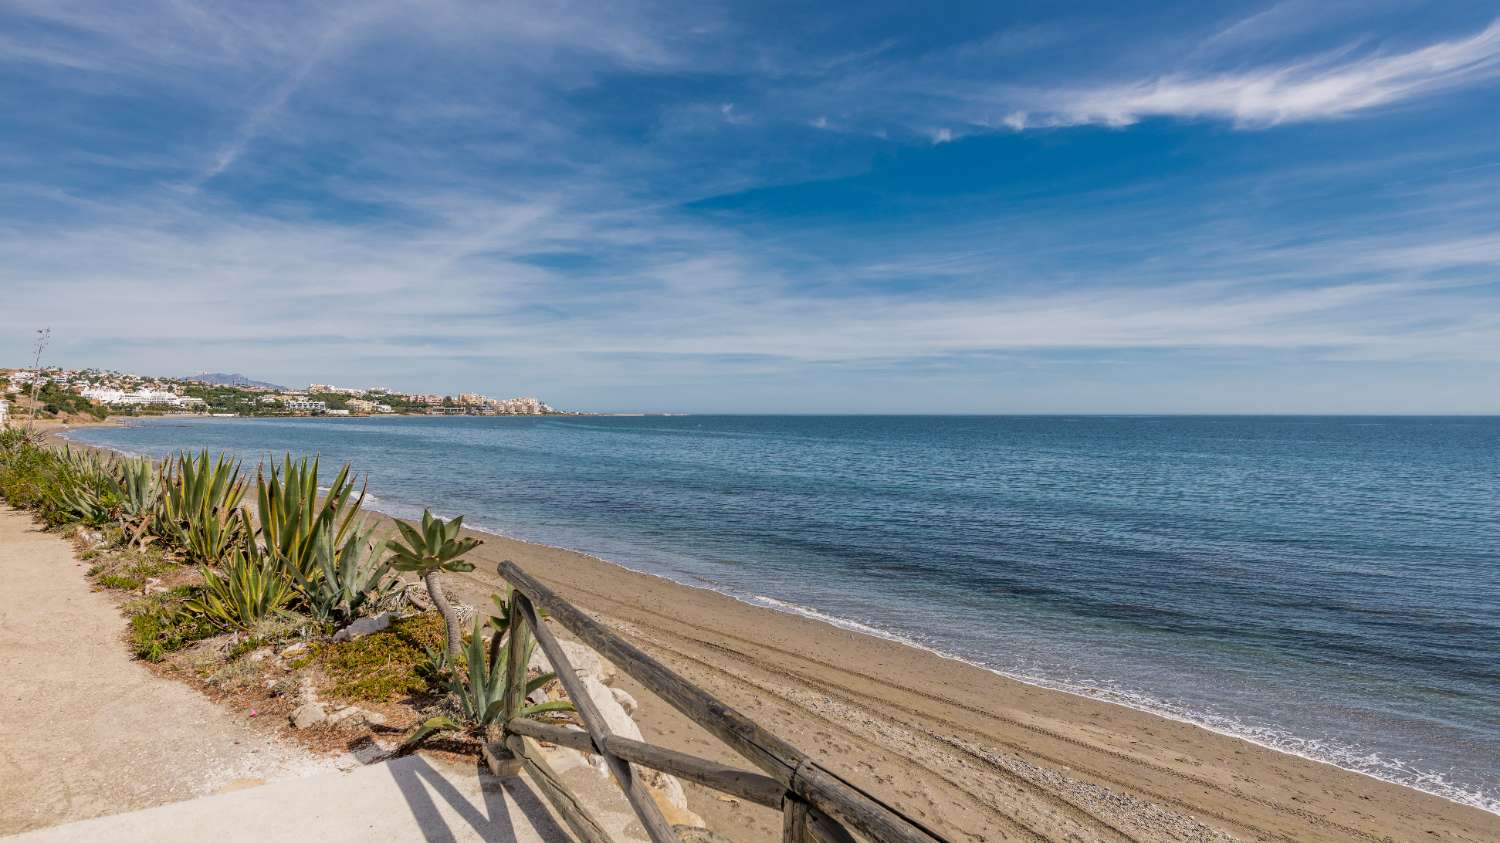 Schöne renovierte Villa mit Meerblick direkt am Strand in Estepona